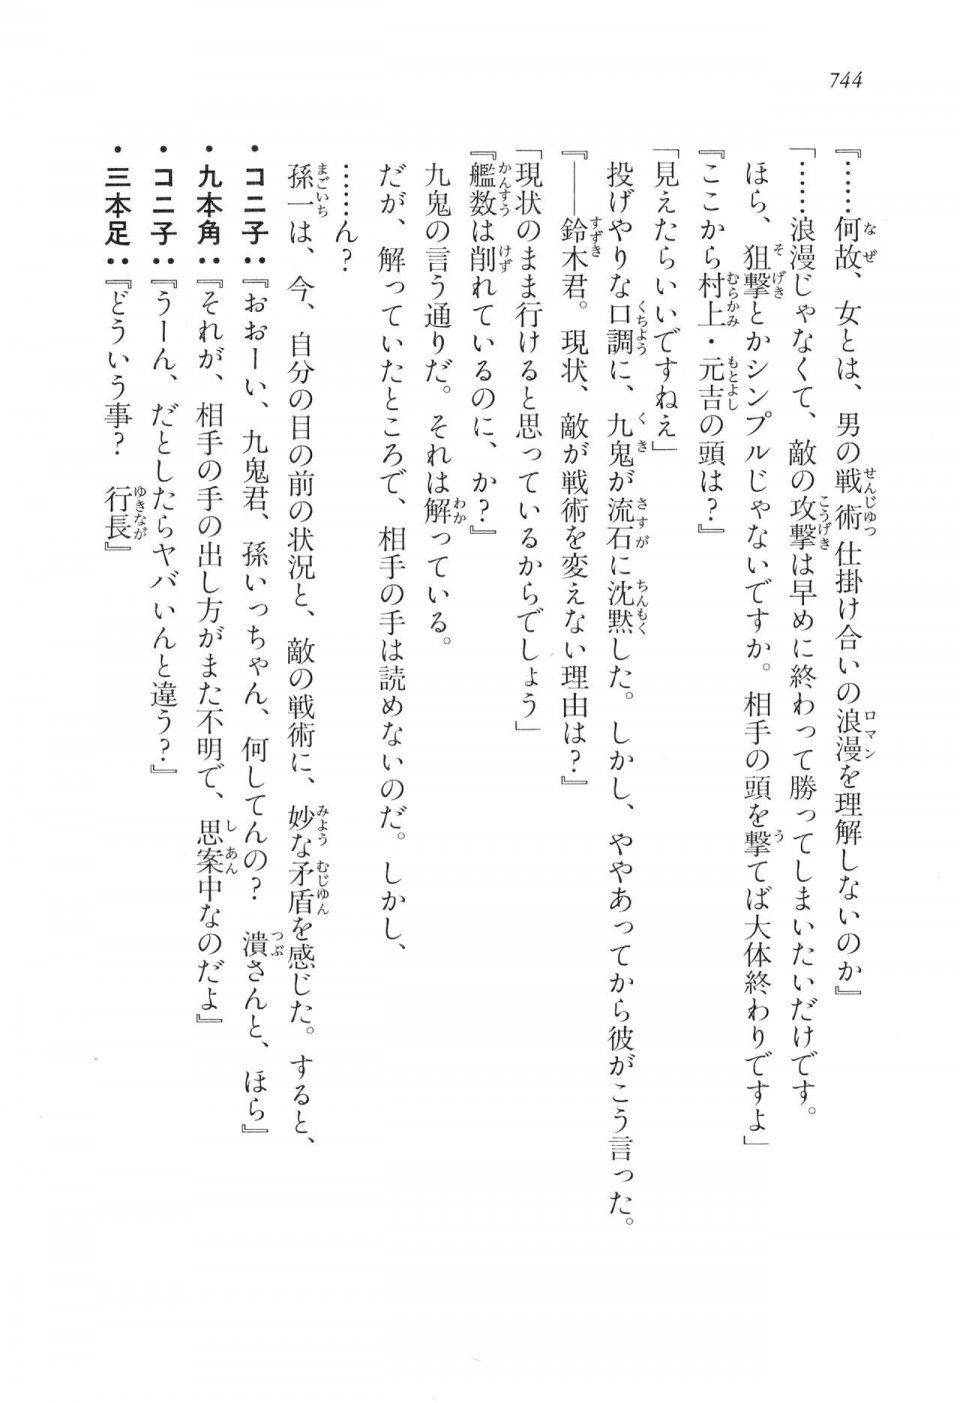 Kyoukai Senjou no Horizon LN Vol 16(7A) - Photo #744